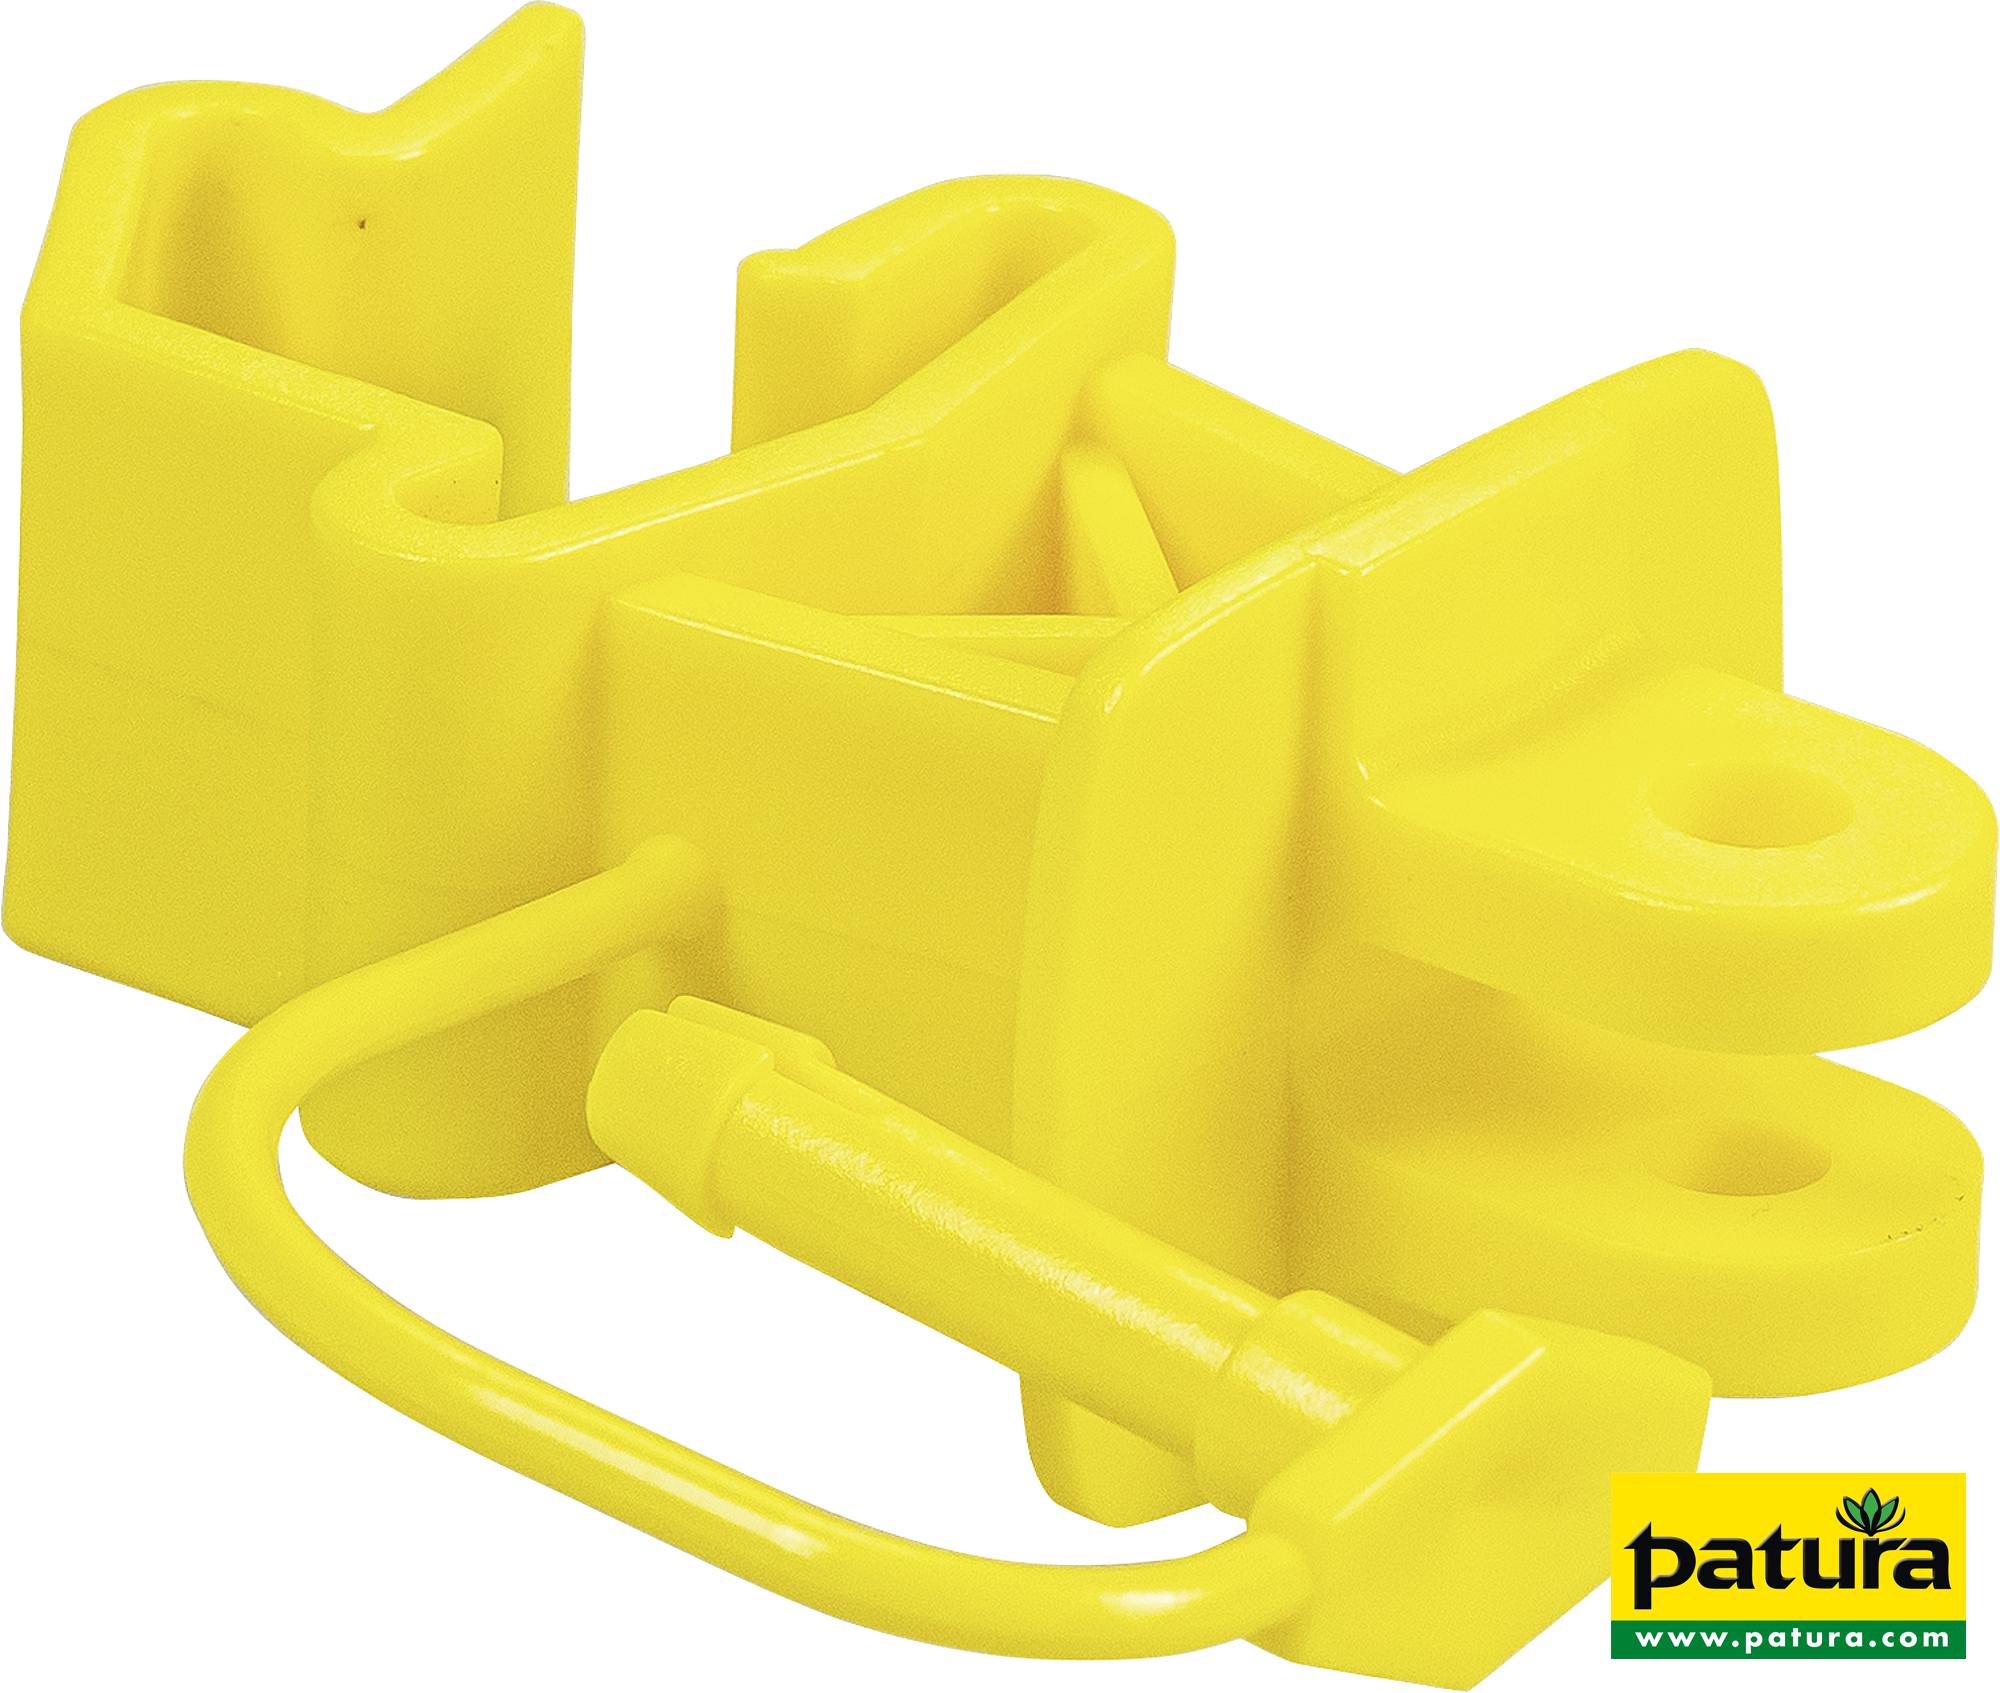 Standard-Isolator mit Stift, gelb, für T-Pfosten (500 Stück / Karton)